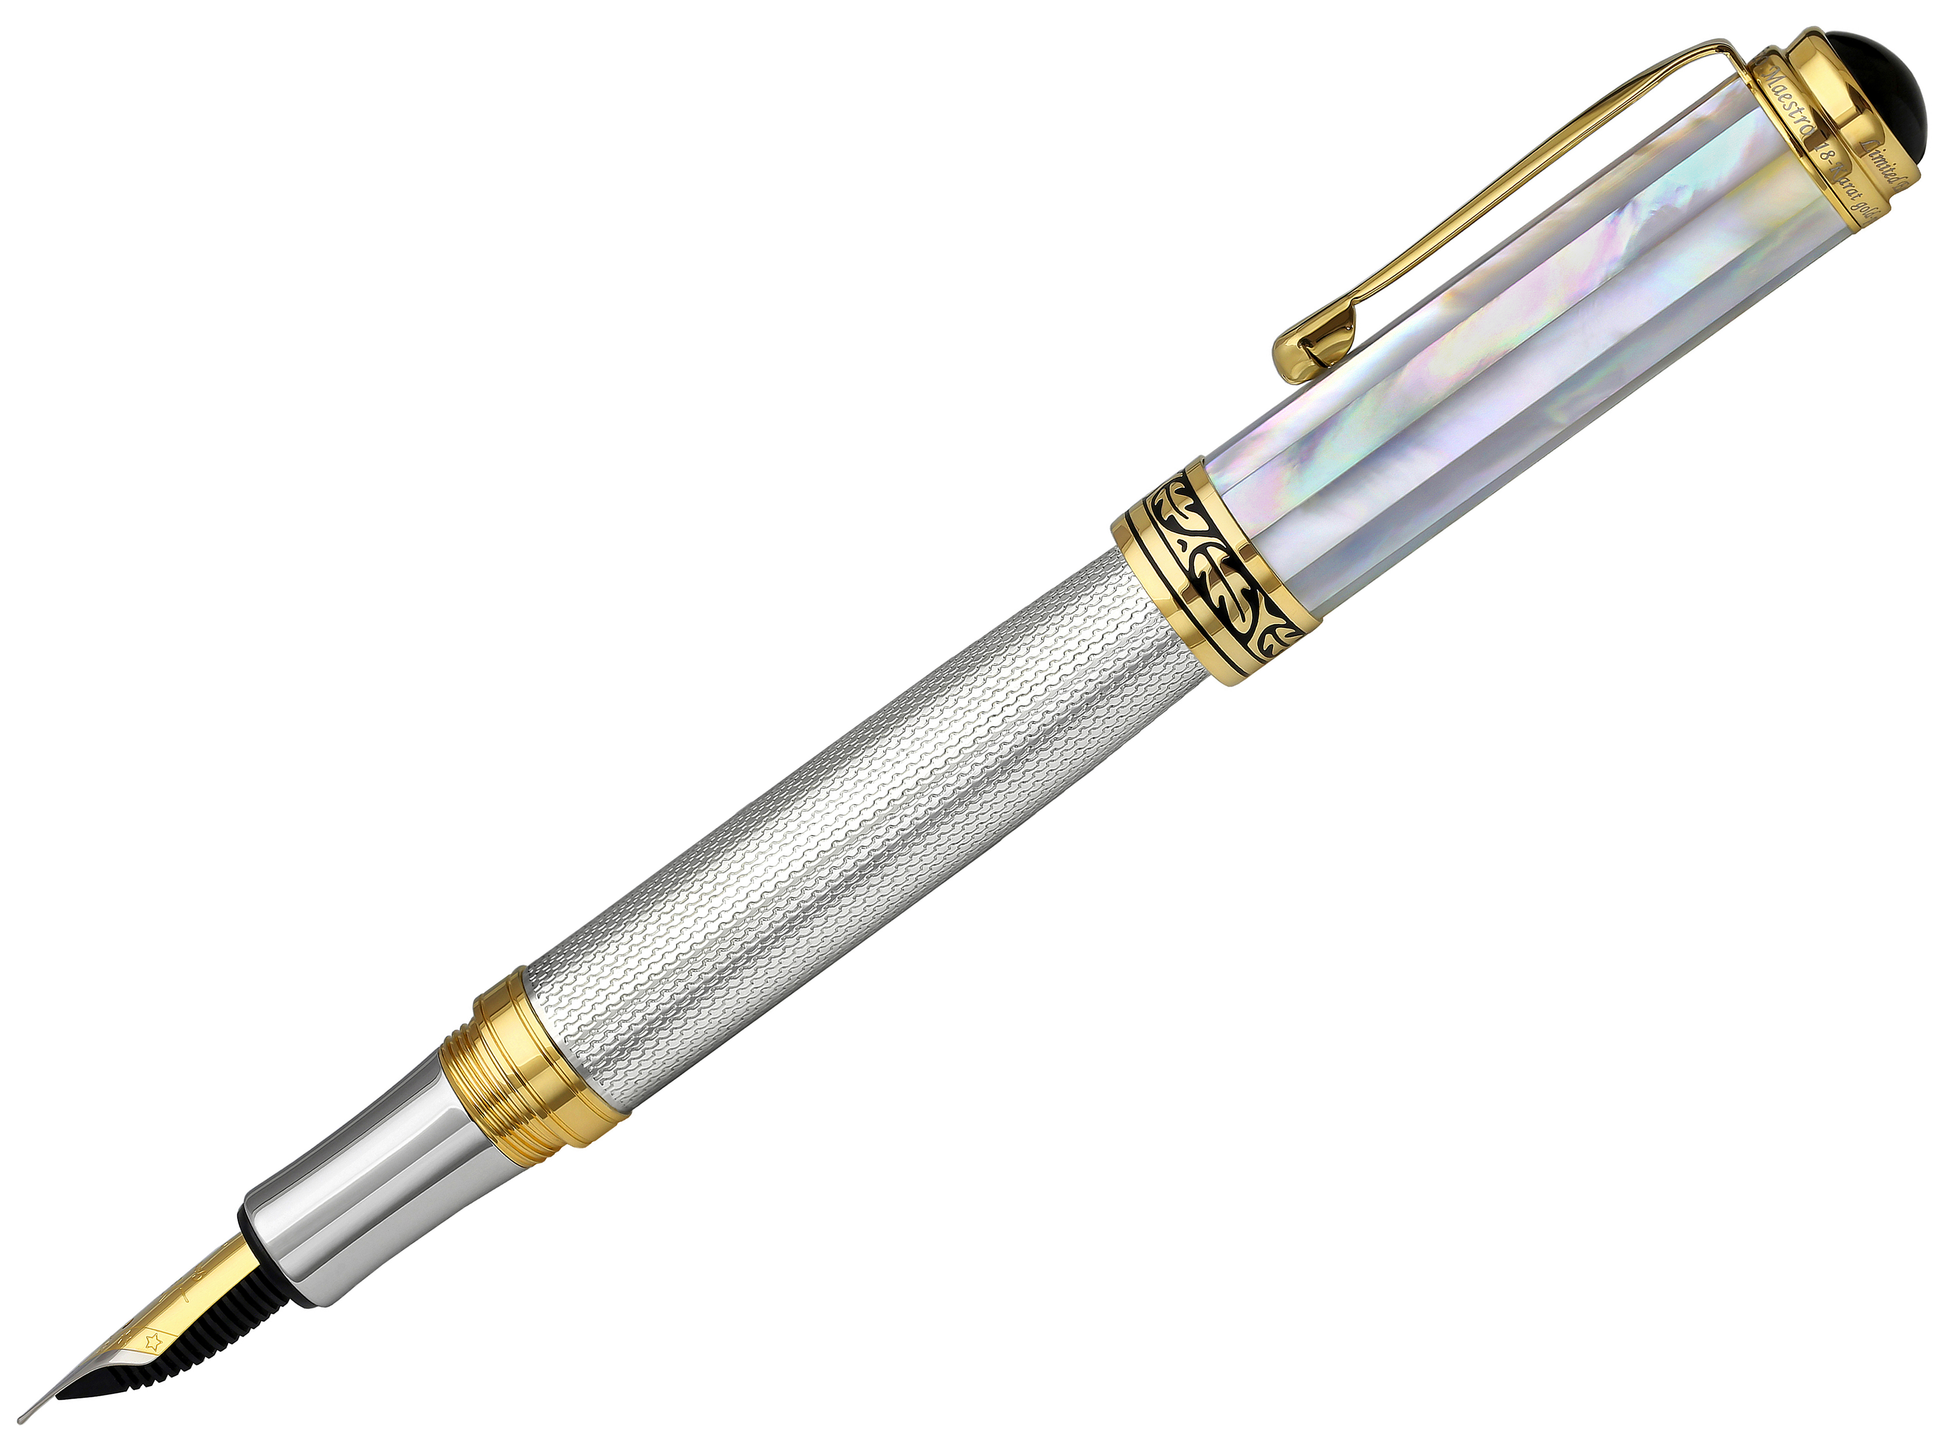 Xezo - Side view of the Maestro 925 White MOP FM Fountain pen